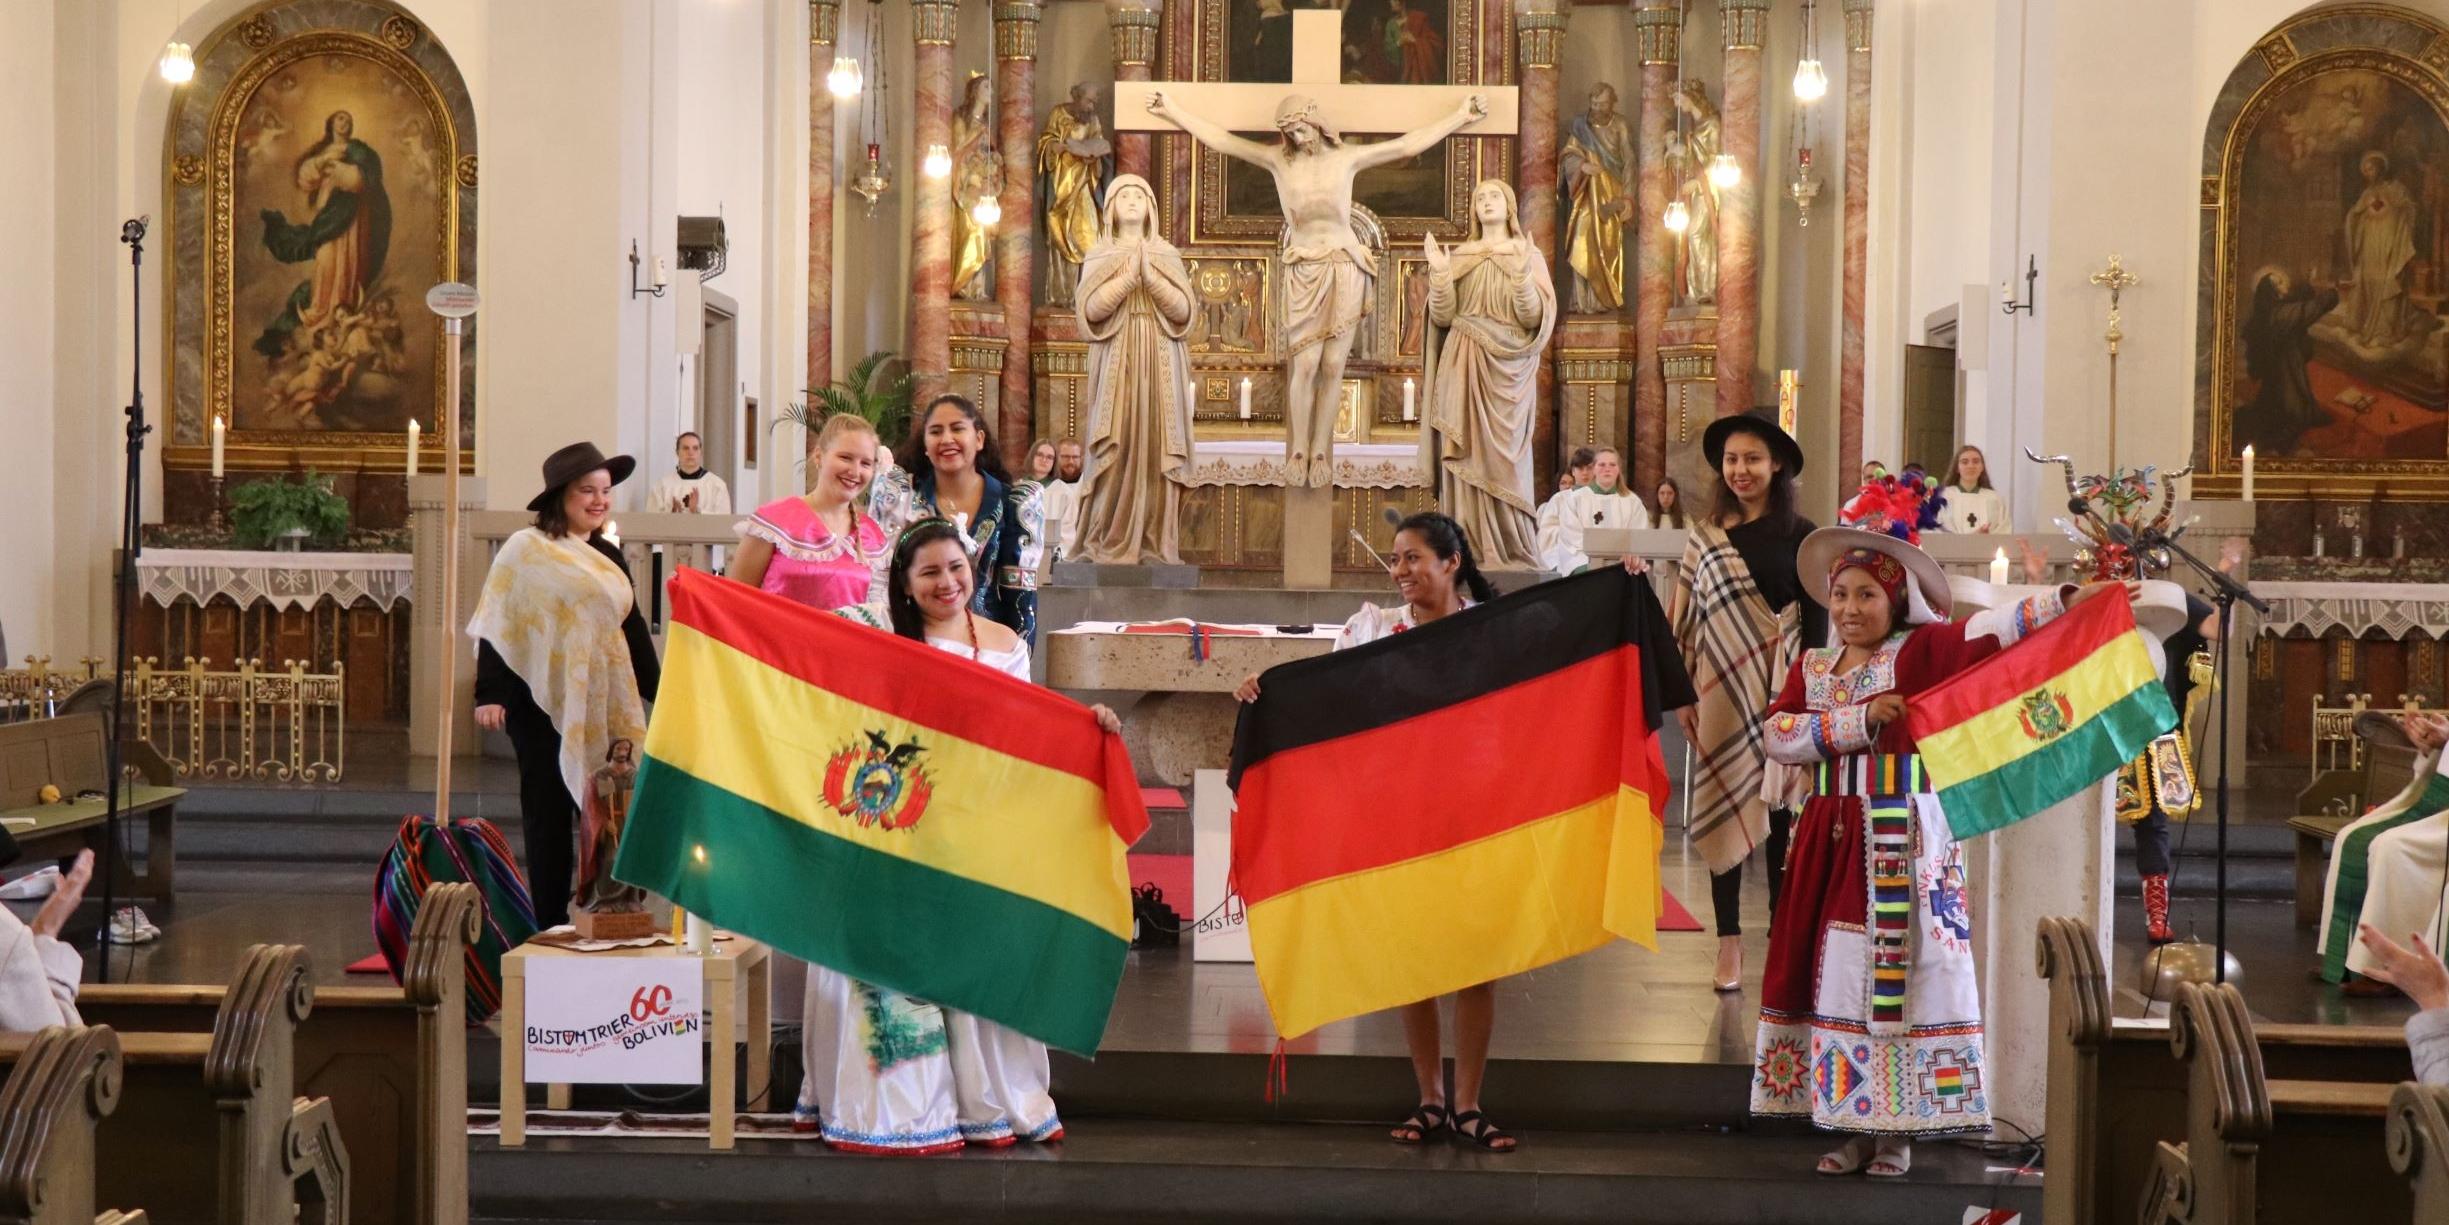 Volunteers aus verschiedenen Diözesen Boliviens, die sich für ein Jahr im Sozialen Friedensdienst im Bistum Trier engagieren, sind derzeit zu Gast. (Foto: Achim Schmitt)